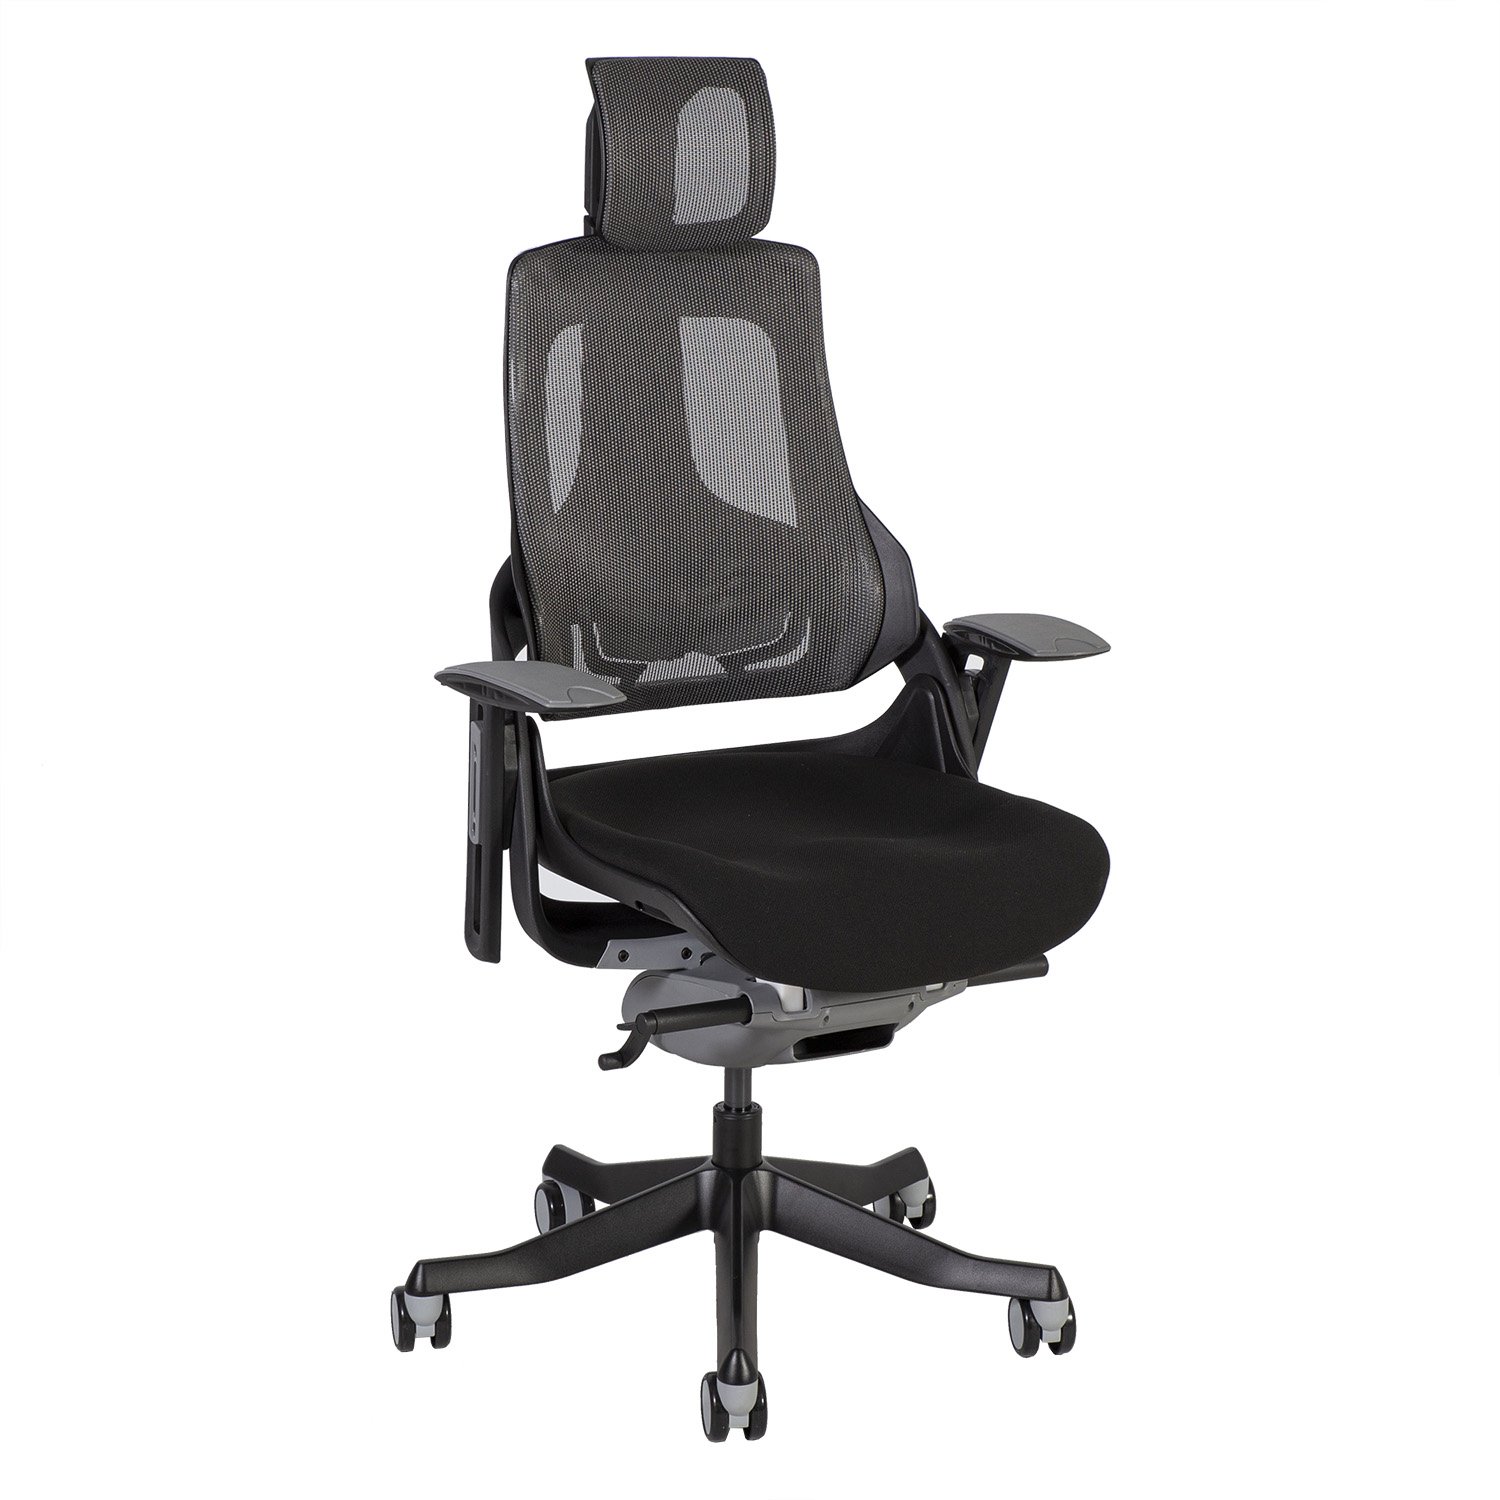 Biuro kėdė WAU, 65x49x112-129cm, juoda/pilka